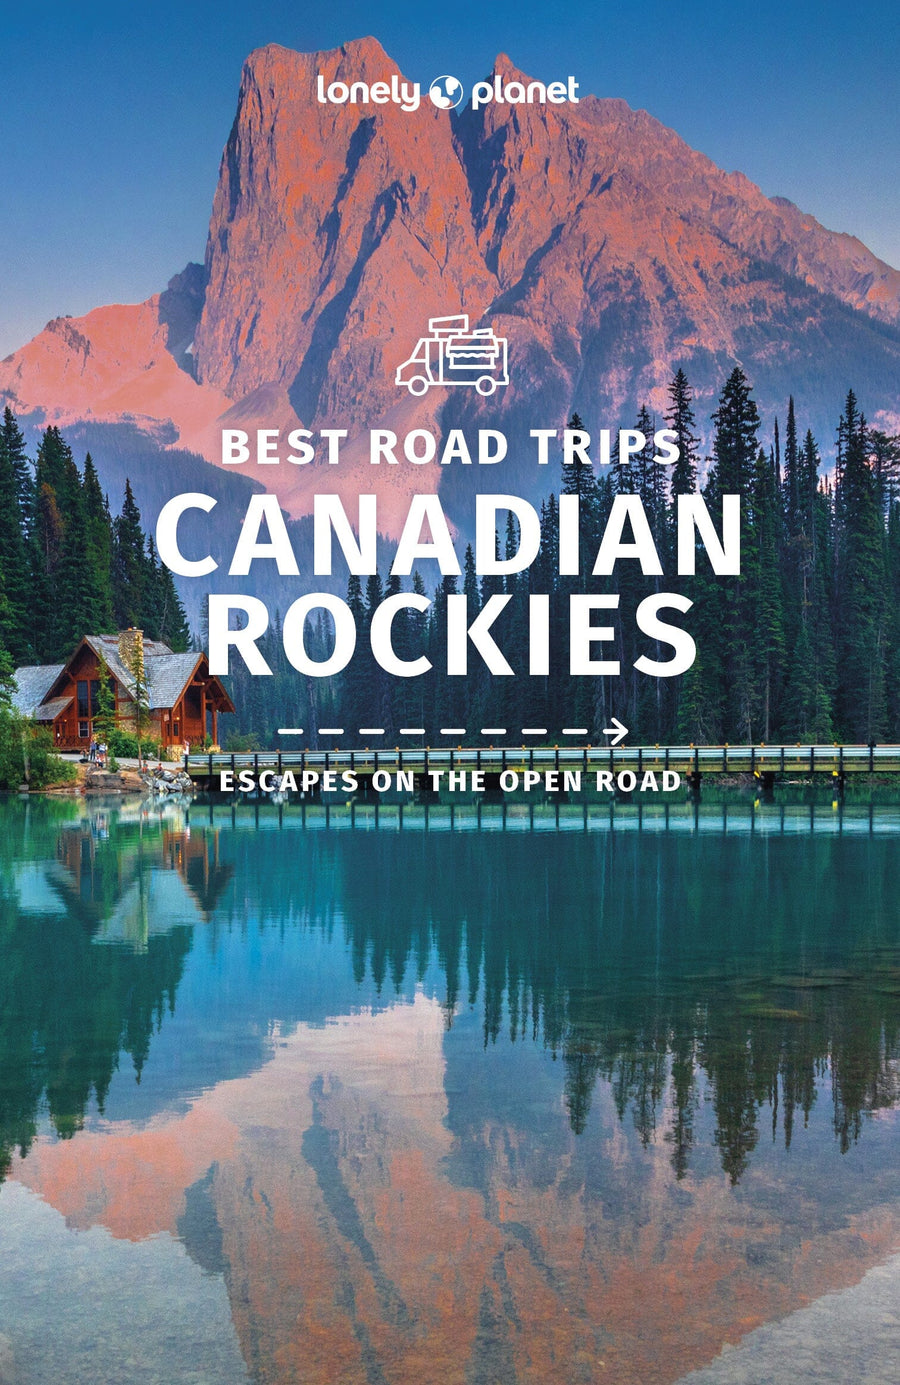 Guide de voyage (en anglais) - Best Road Trips : Canadian Rockies | Lonely Planet guide de voyage Lonely Planet EN 